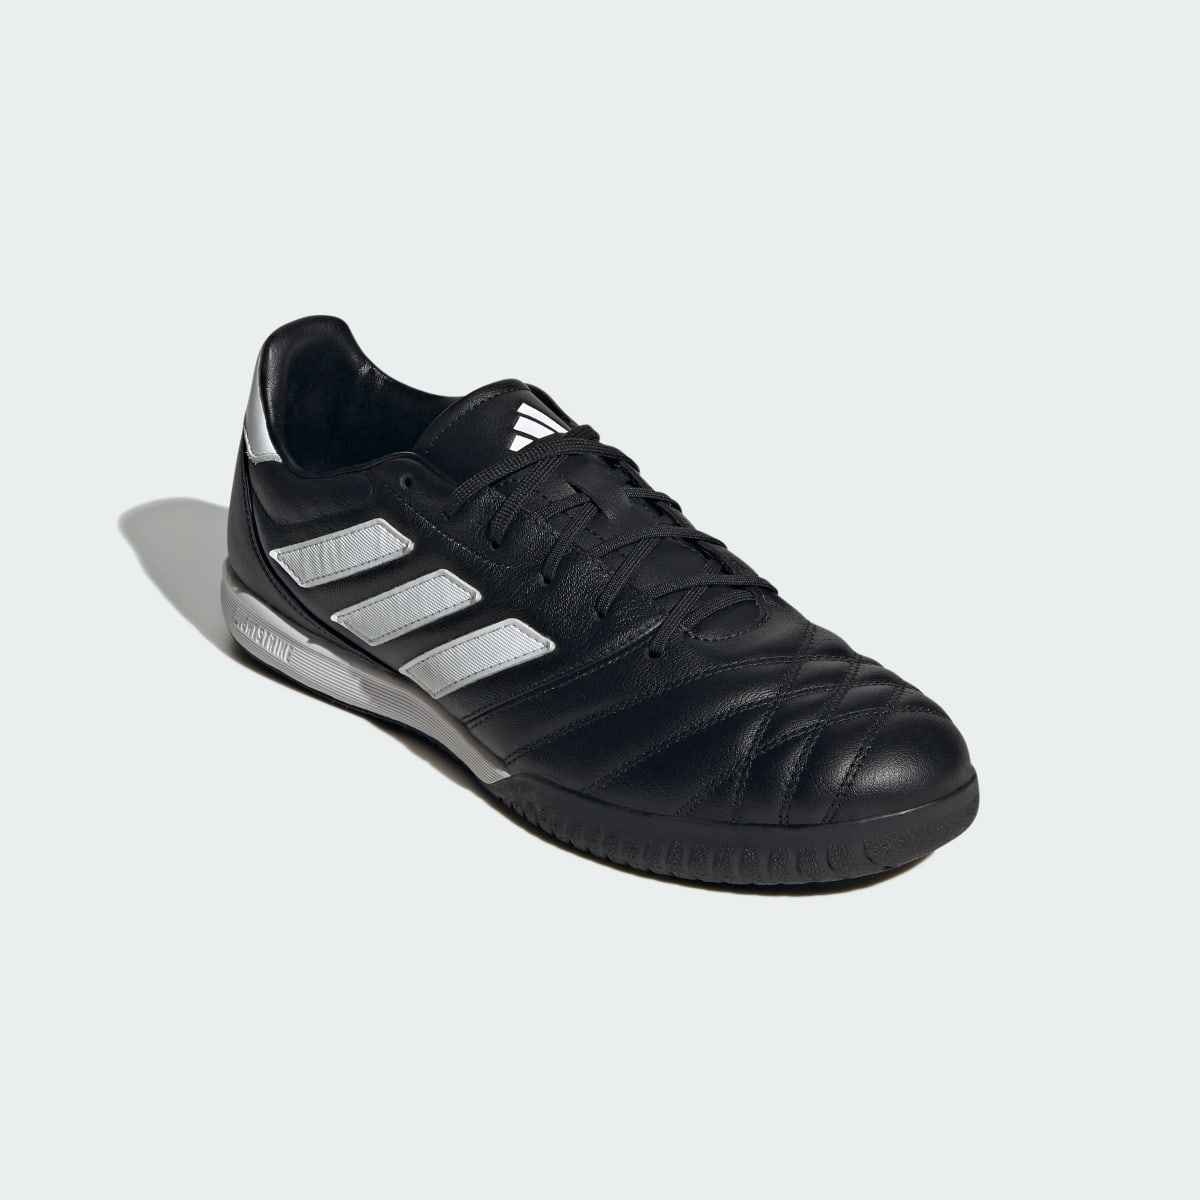 Adidas Copa Gloro Indoor Boots. 5